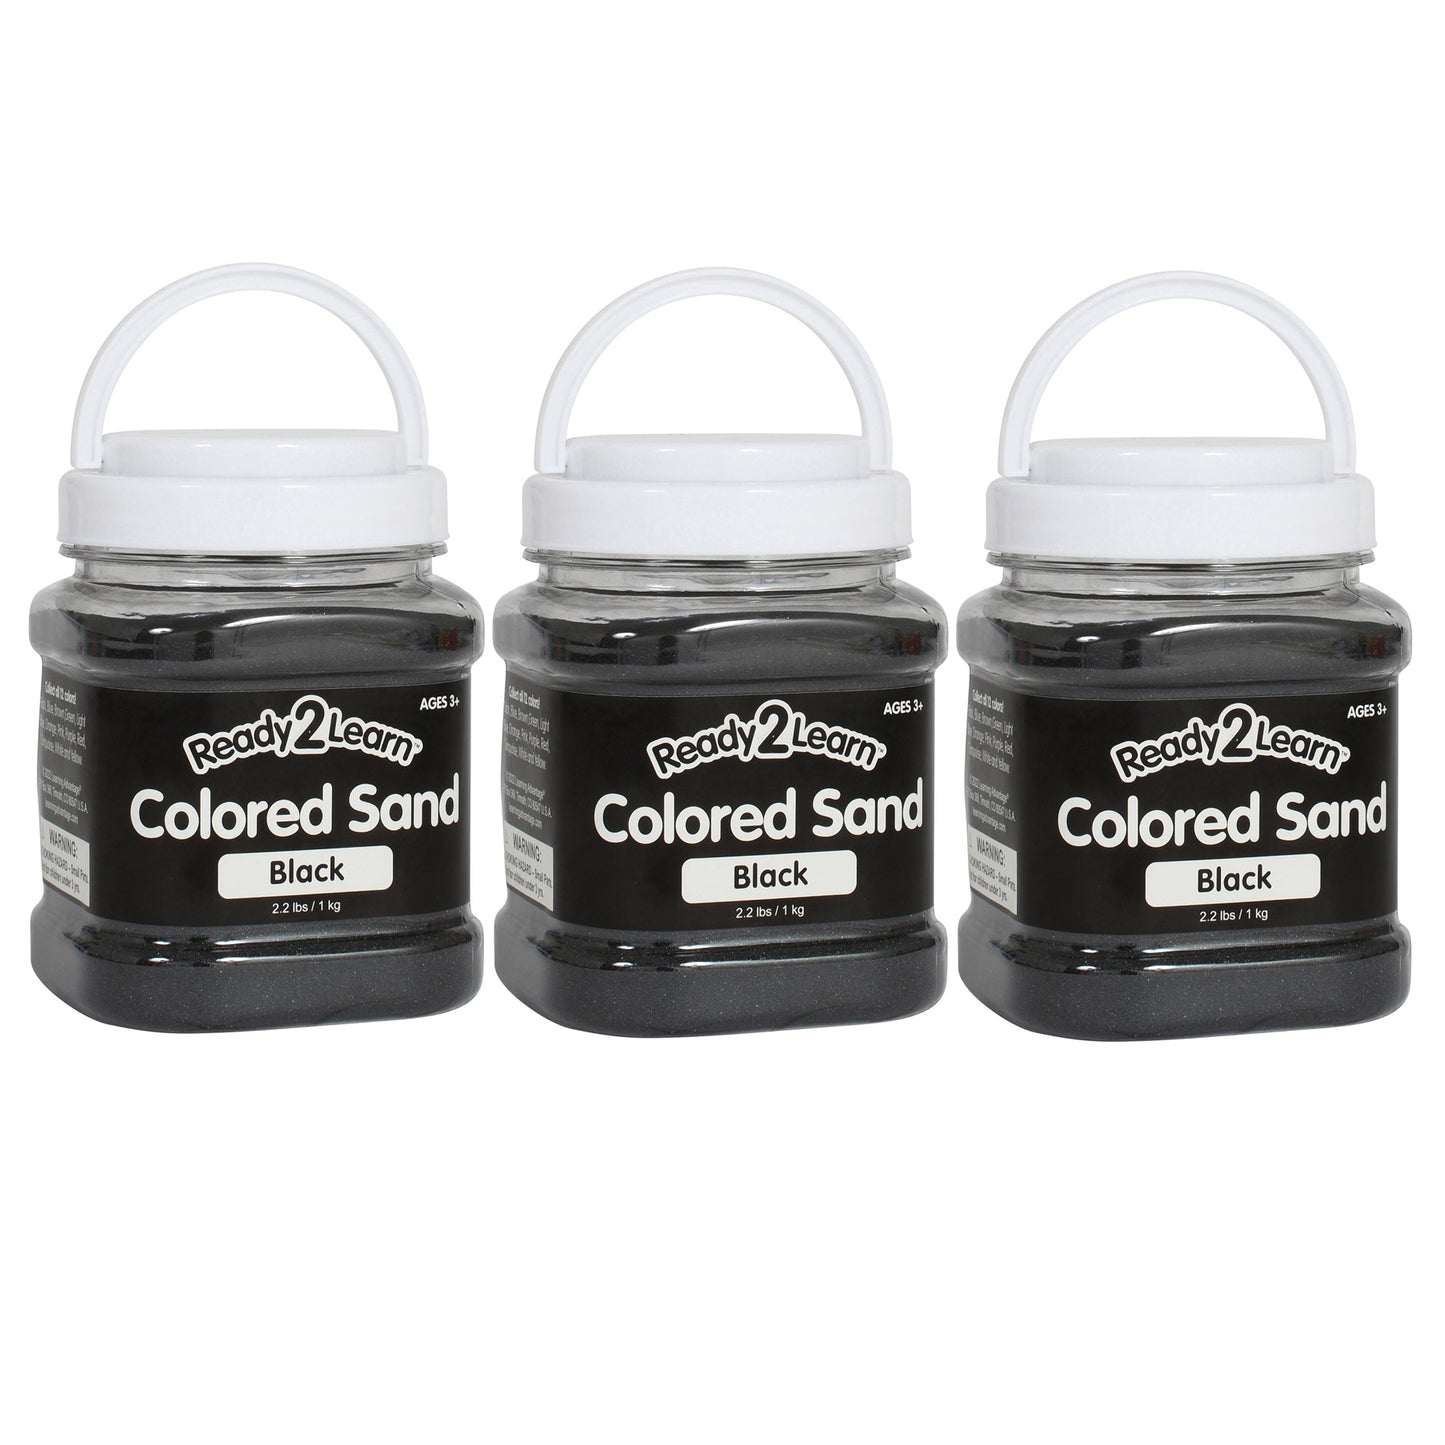 Colored Sand - Black - 2.2 lb. Jar - Pack of 3